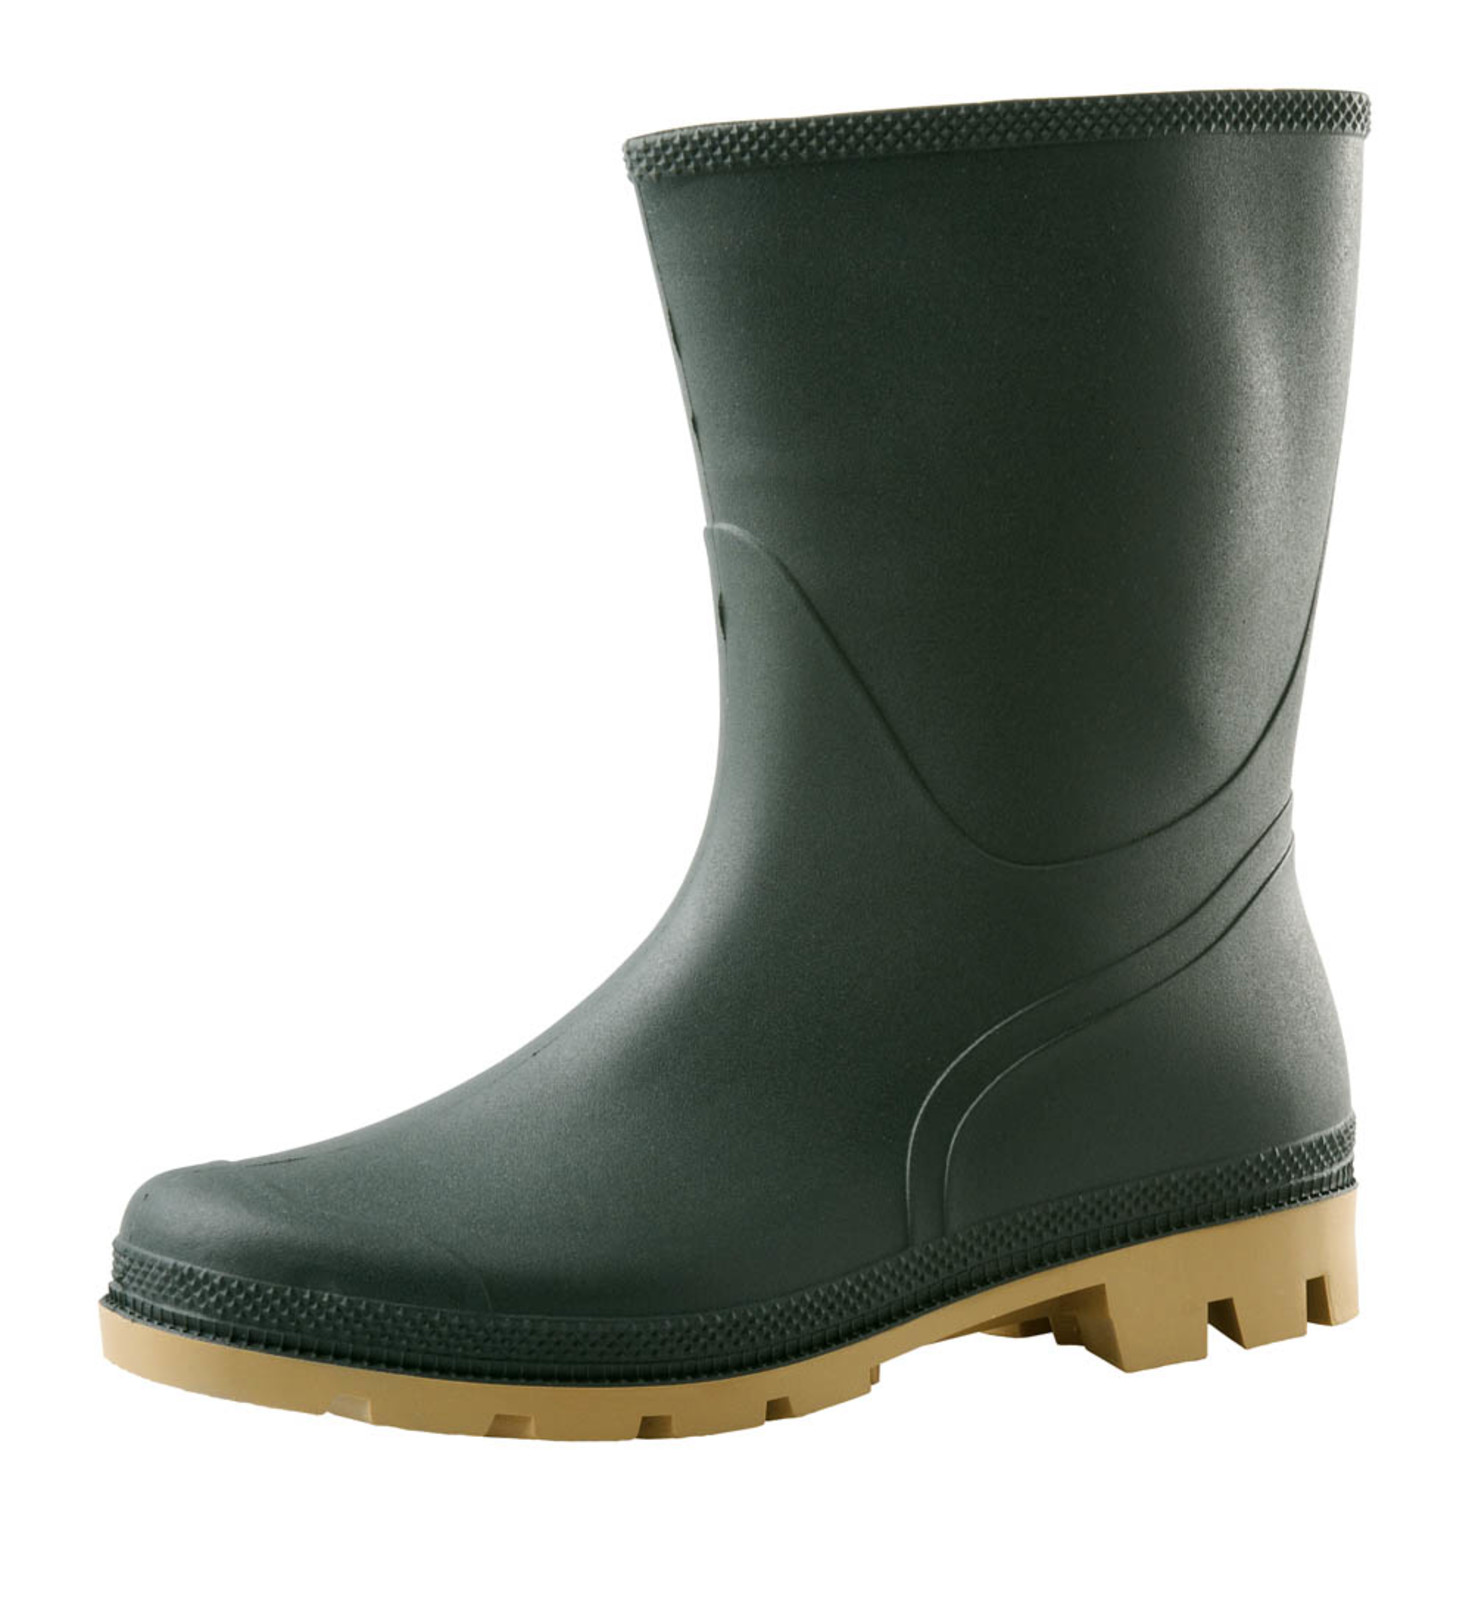 Gumáky Boots Troncheto PVC nízke - veľkosť: 37, farba: zelená